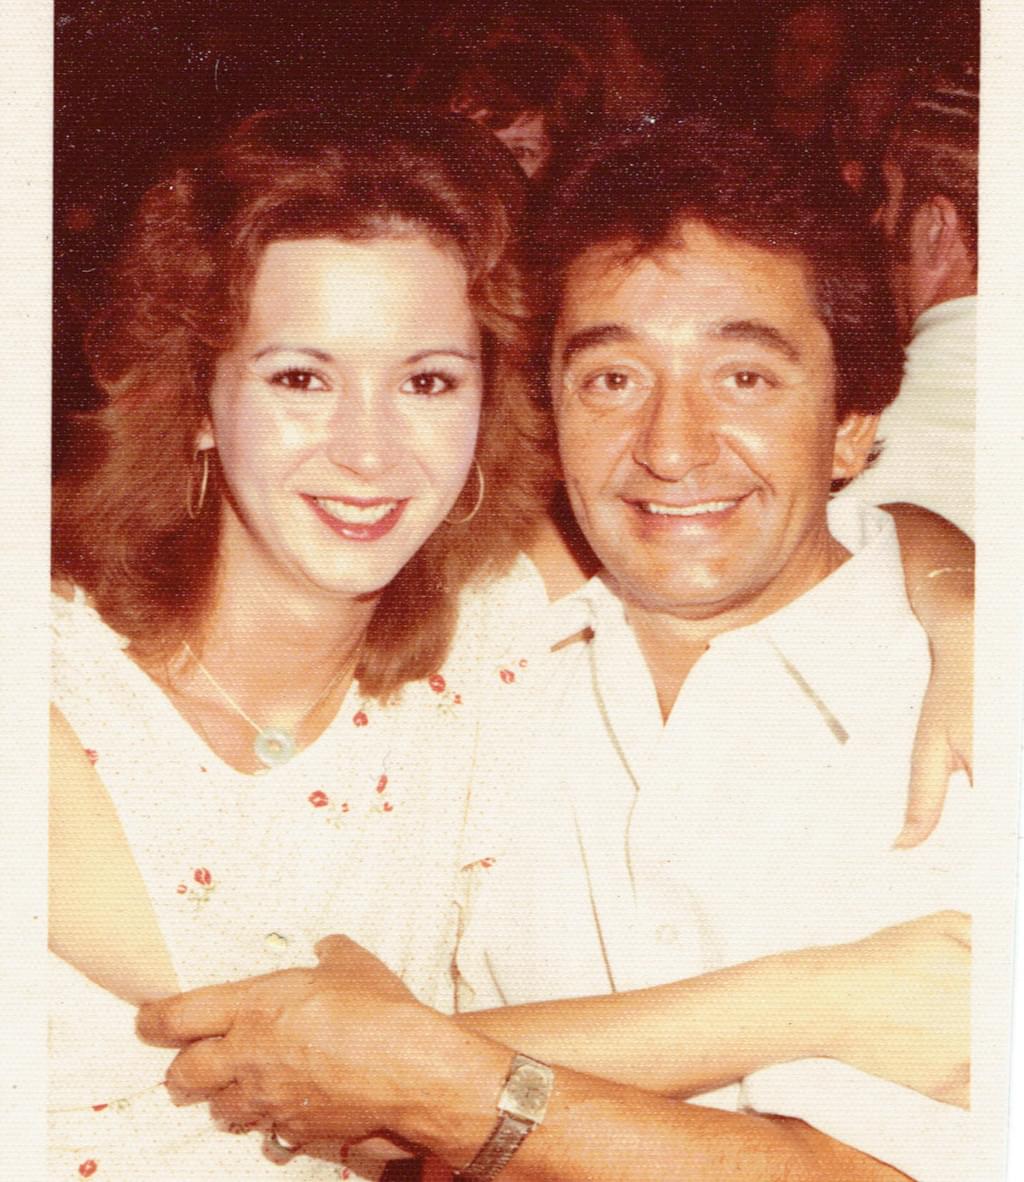 Elmer and Rita Pellegrini